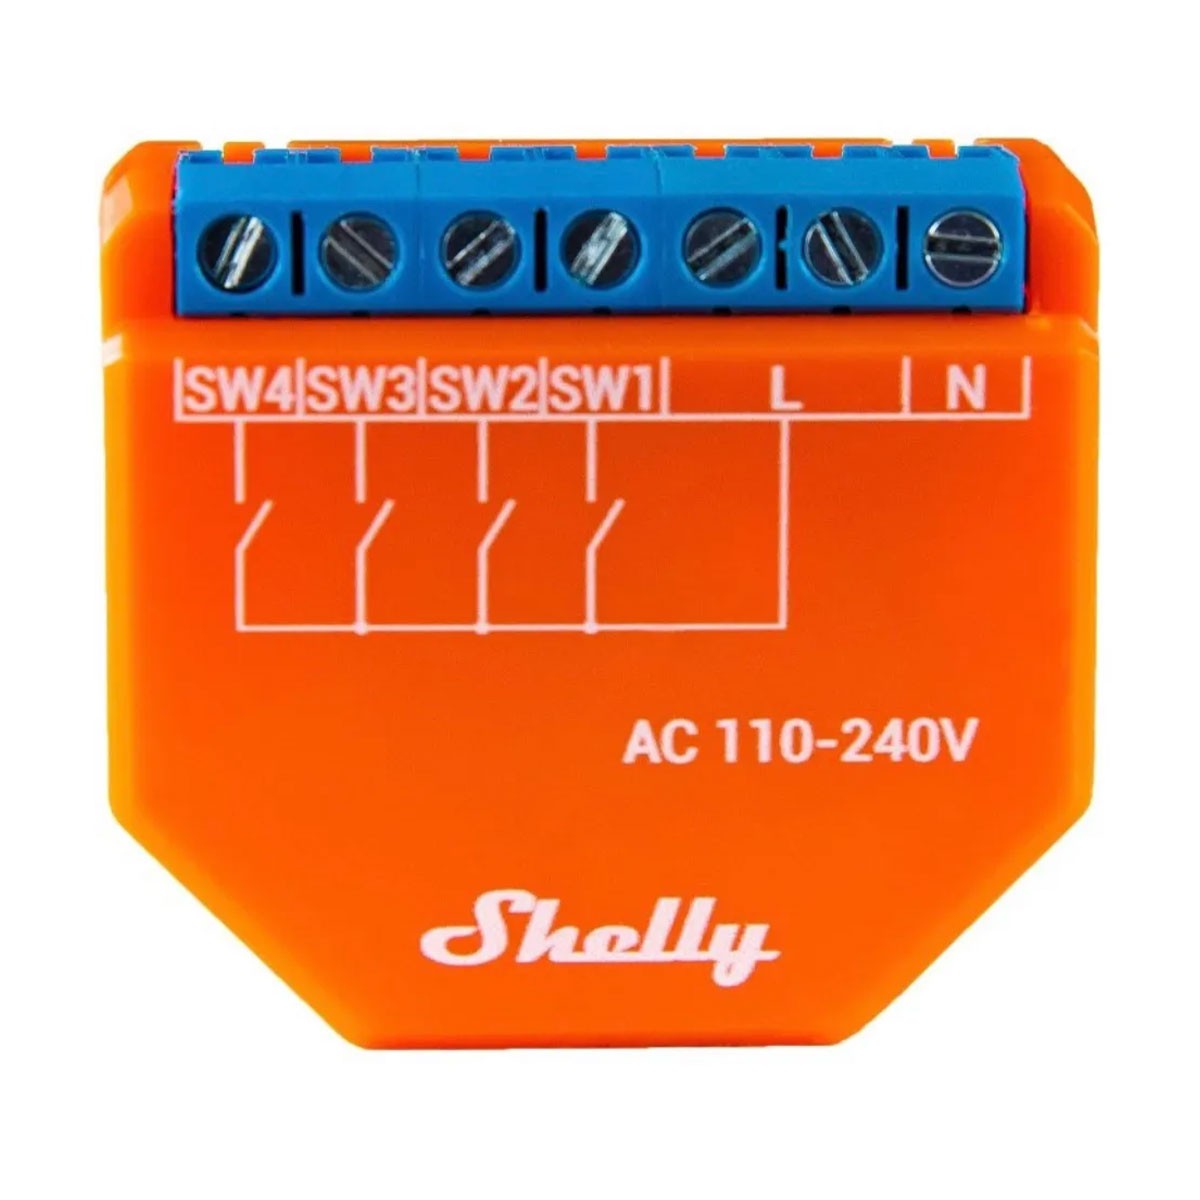 Shelly i4 Plus - Módulo WiFi/BT - Smartify - Casa Inteligente - Smart Home - Domotica - Casas Inteligentes